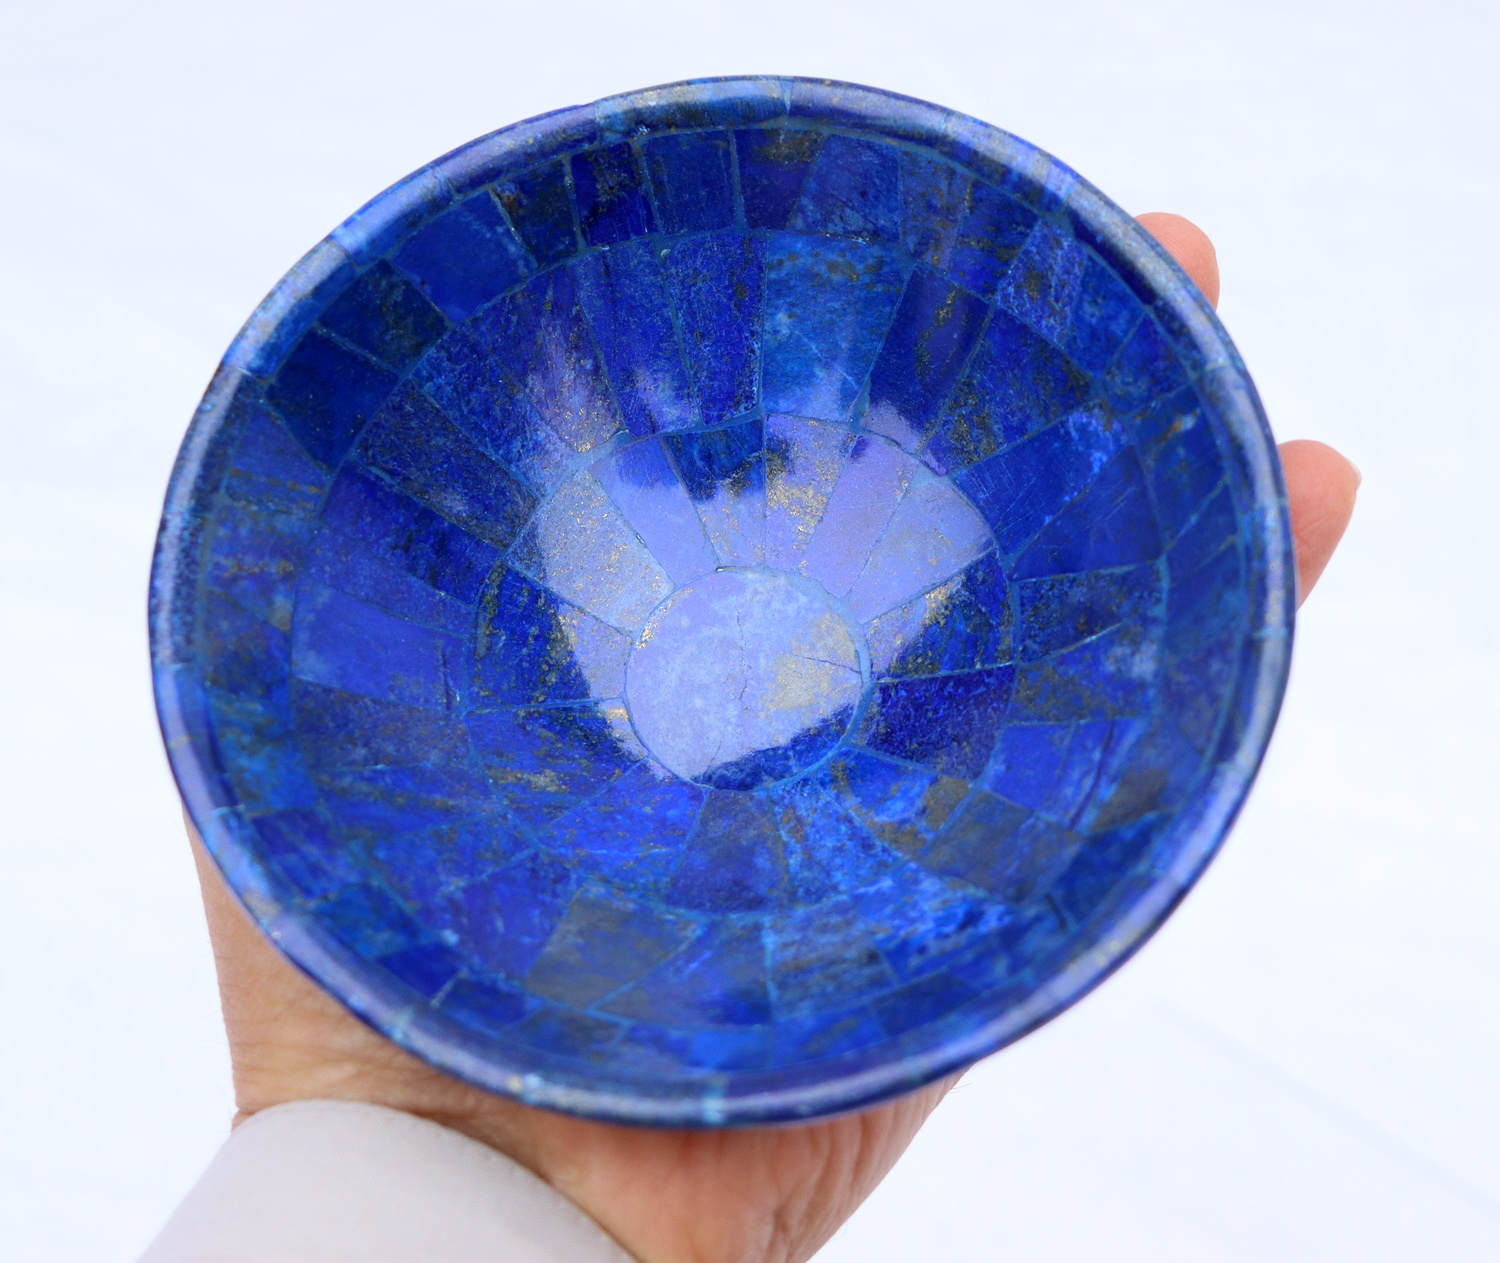 13 cm ⌀ Extravagant Royal blau echt Lapis lazuli Schale Teller  aus Afghanistan S/23